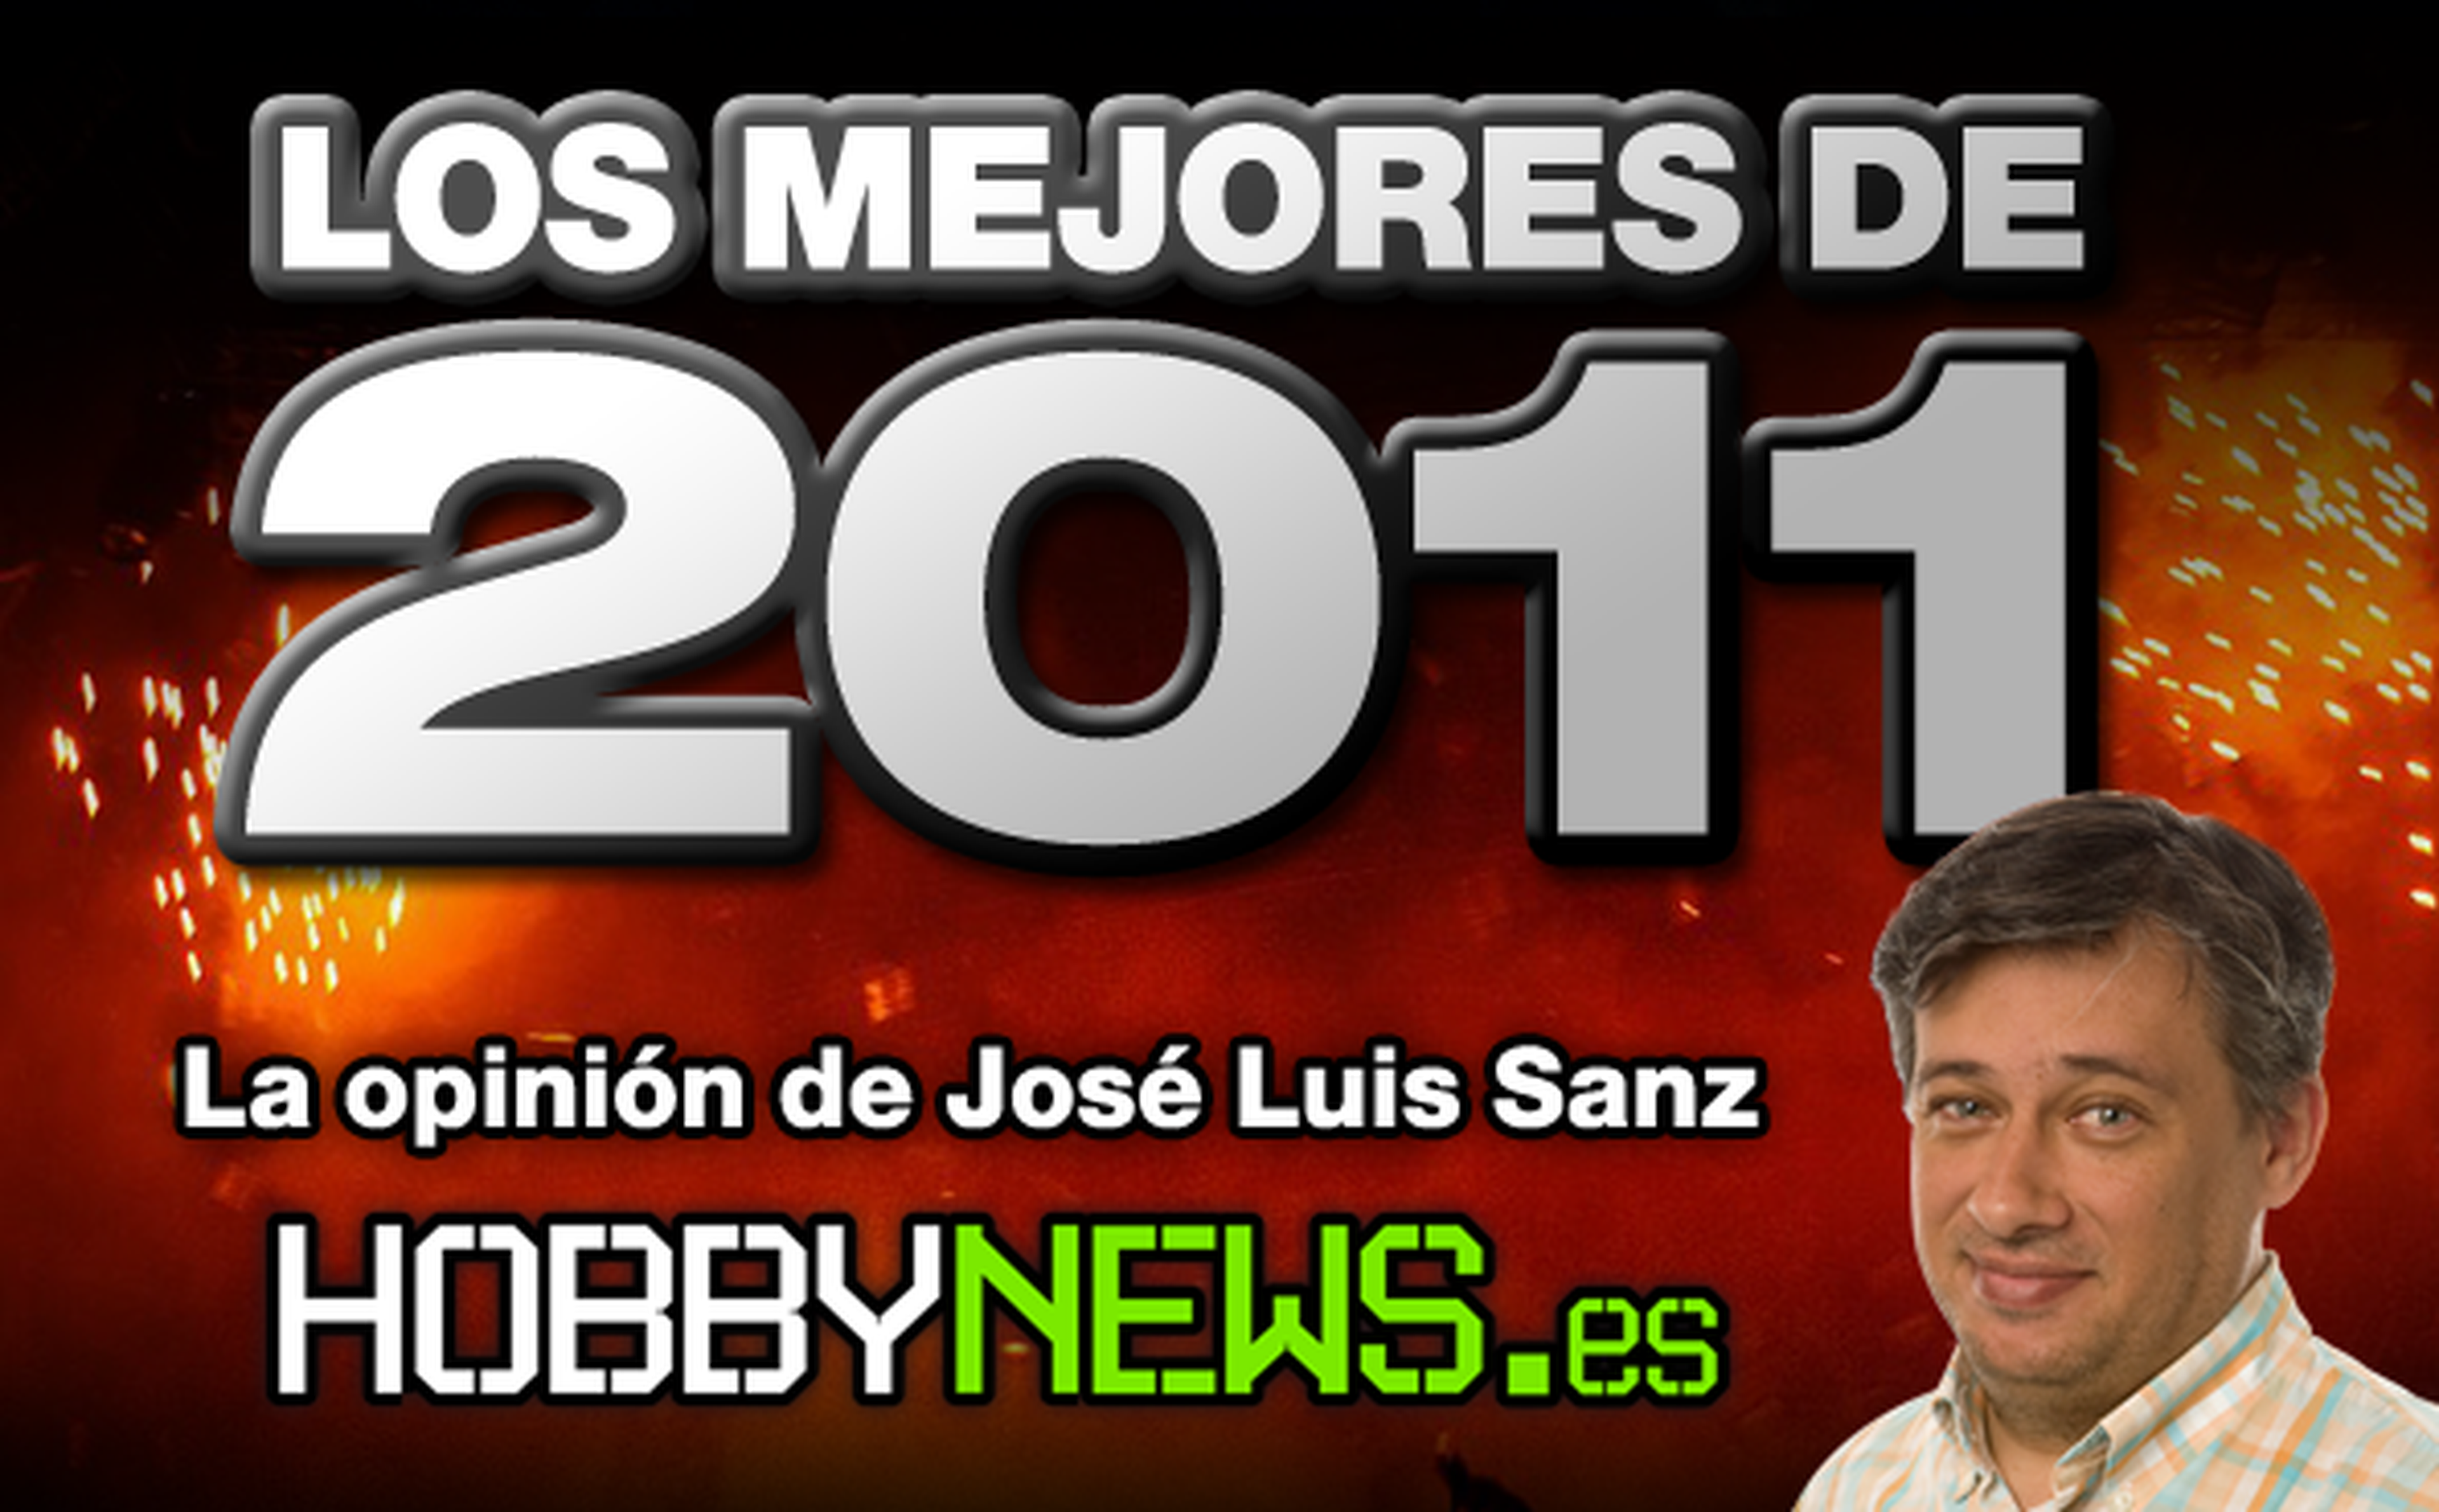 Los mejores de 2011: José Luis Sanz